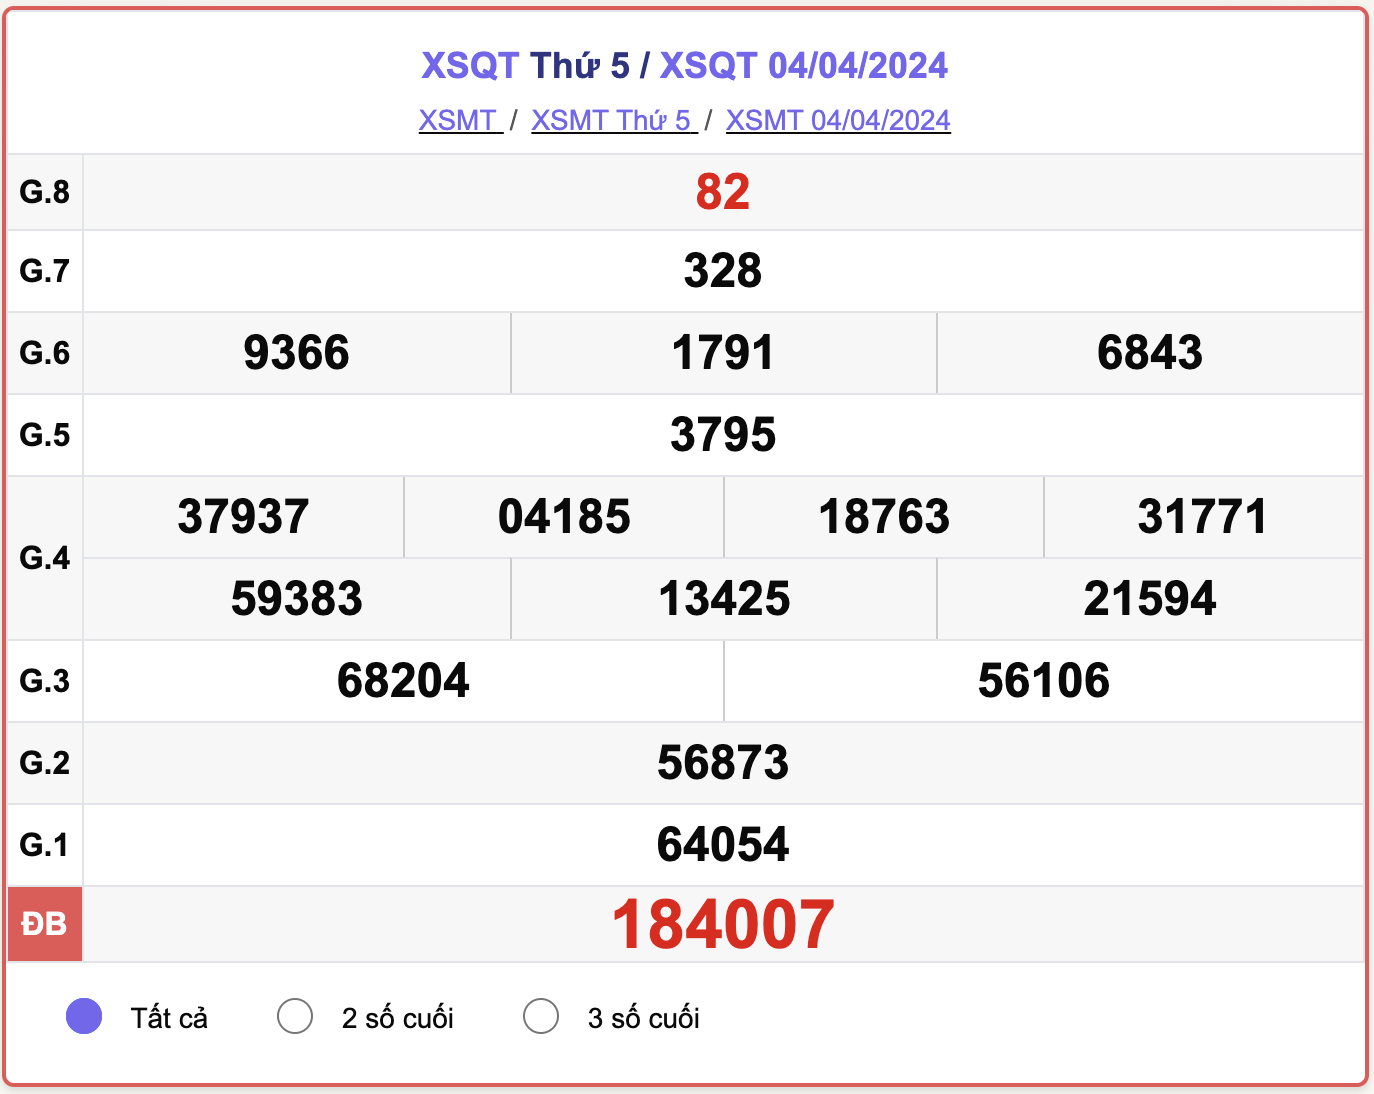 XSQT thứ 5, kết quả xổ số Quảng Trị ngày 4/4/2024